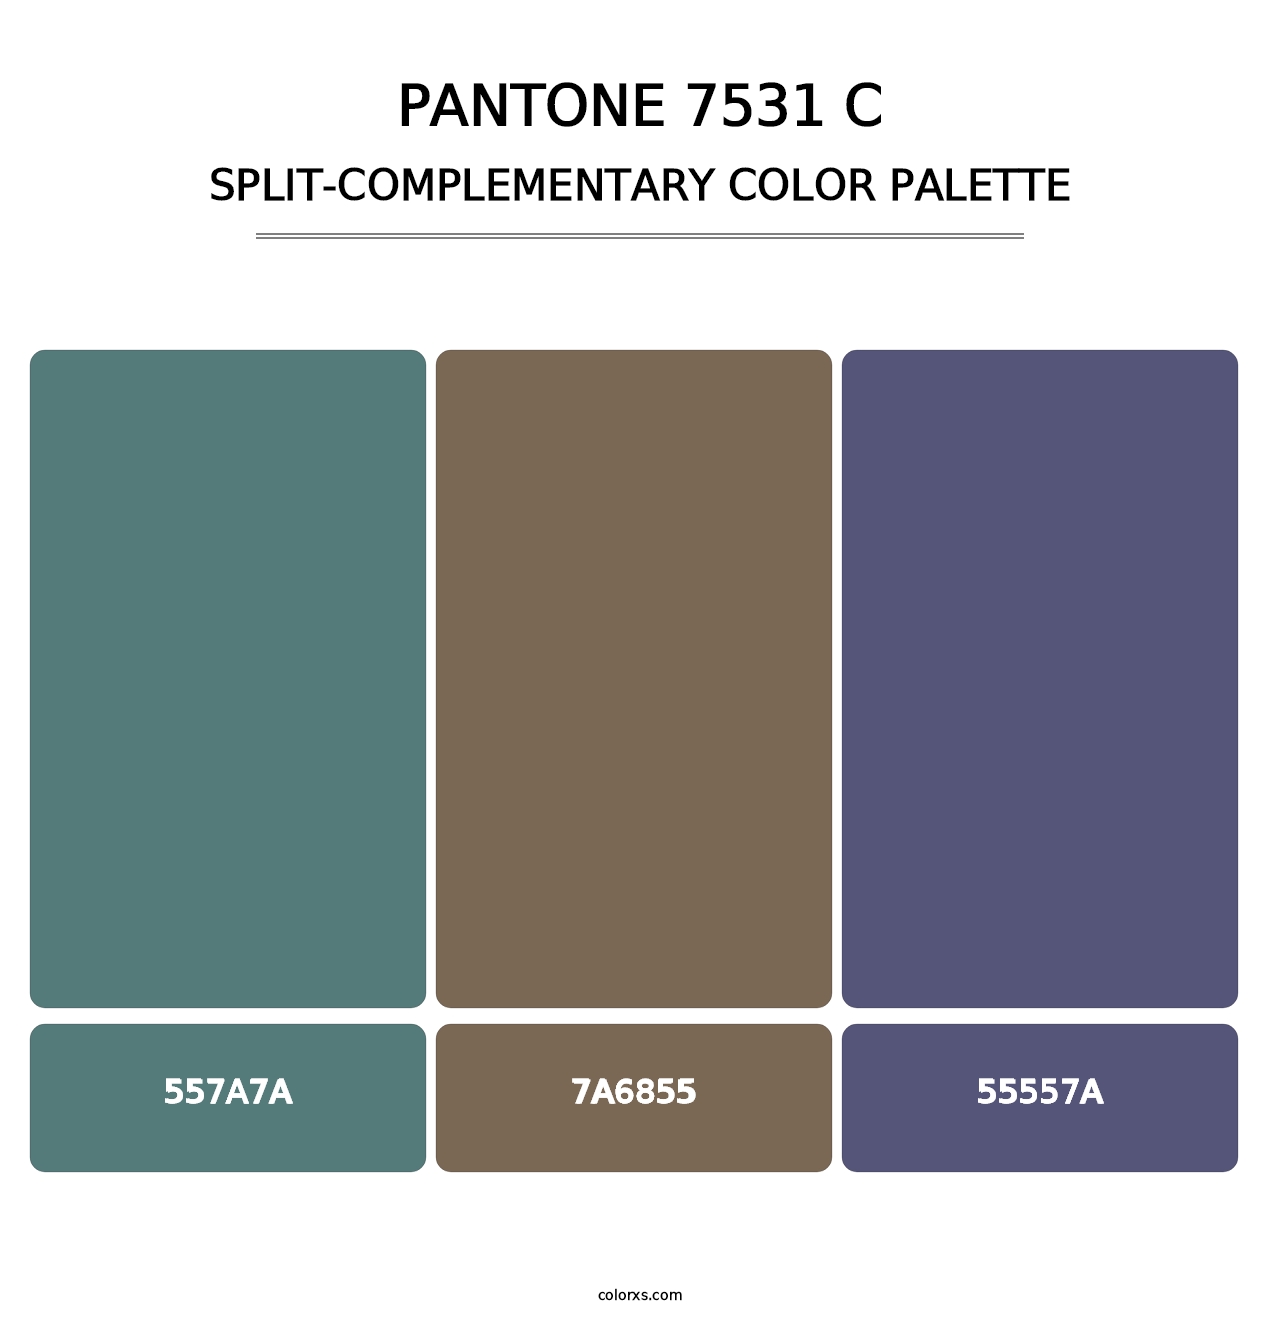 PANTONE 7531 C - Split-Complementary Color Palette